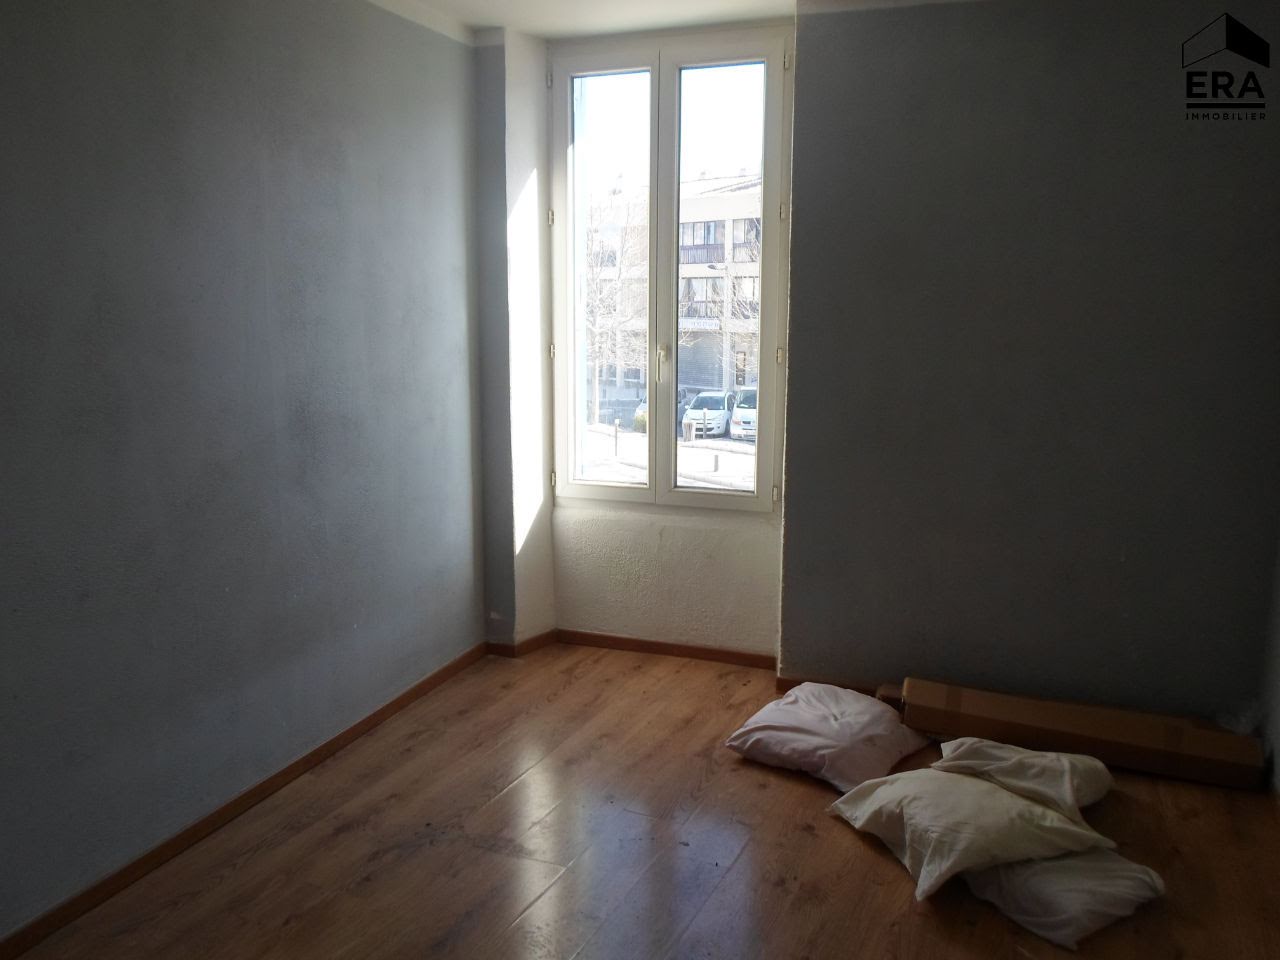 Vente appartement 3 pièces 50,24 m2